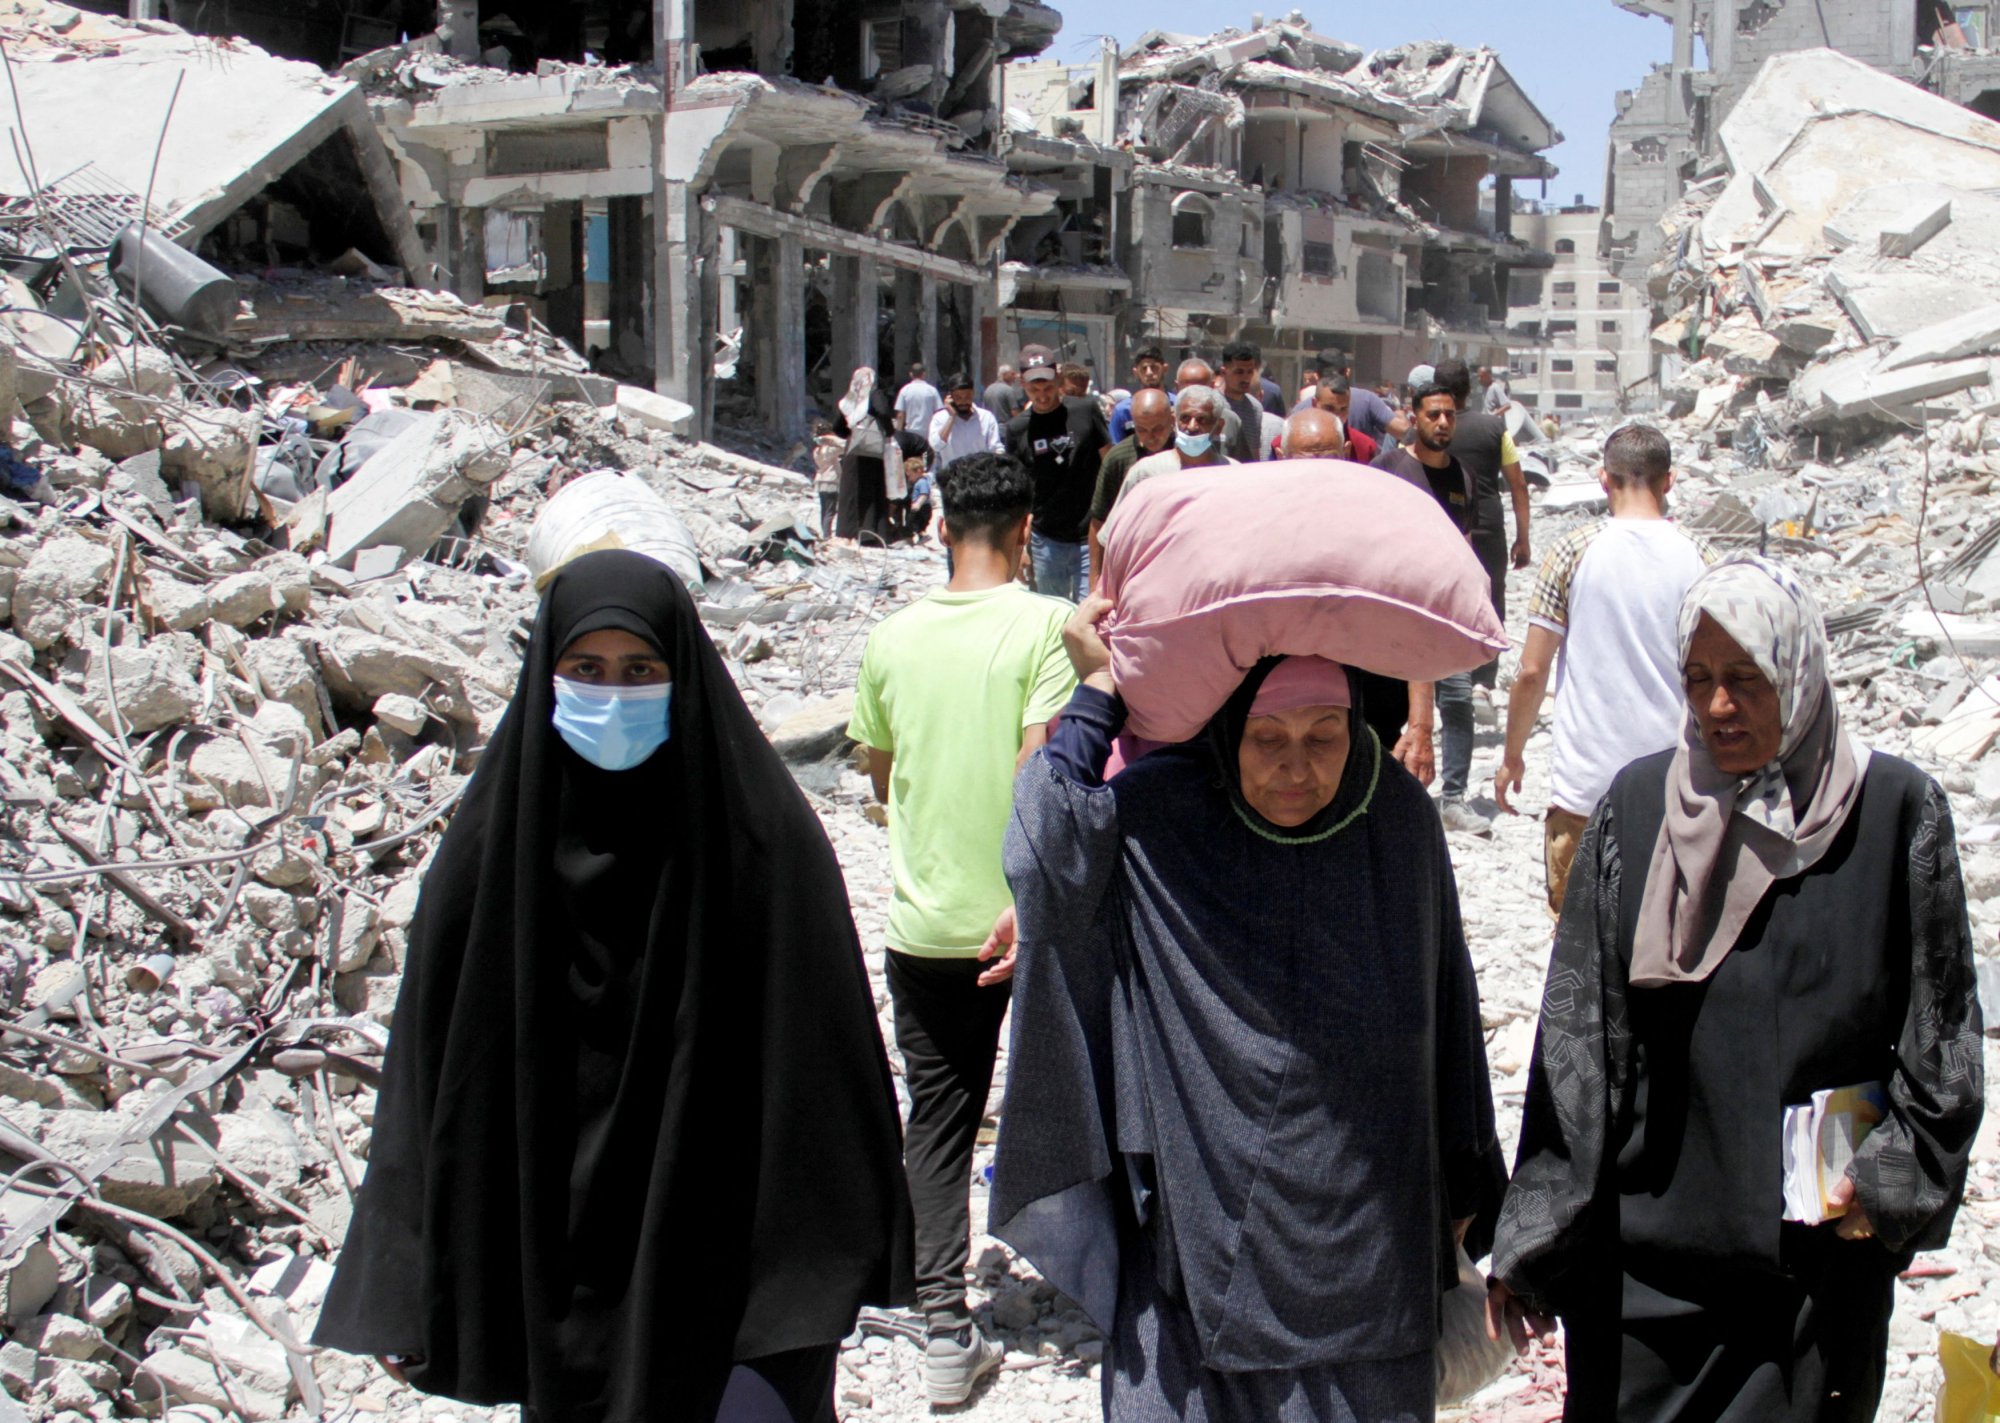 Γάζα: Τα νέα δεδομένα μετά την πρόταση Μπάιντεν - Ο διάβολος κρύβεται στις λεπτομέρειες